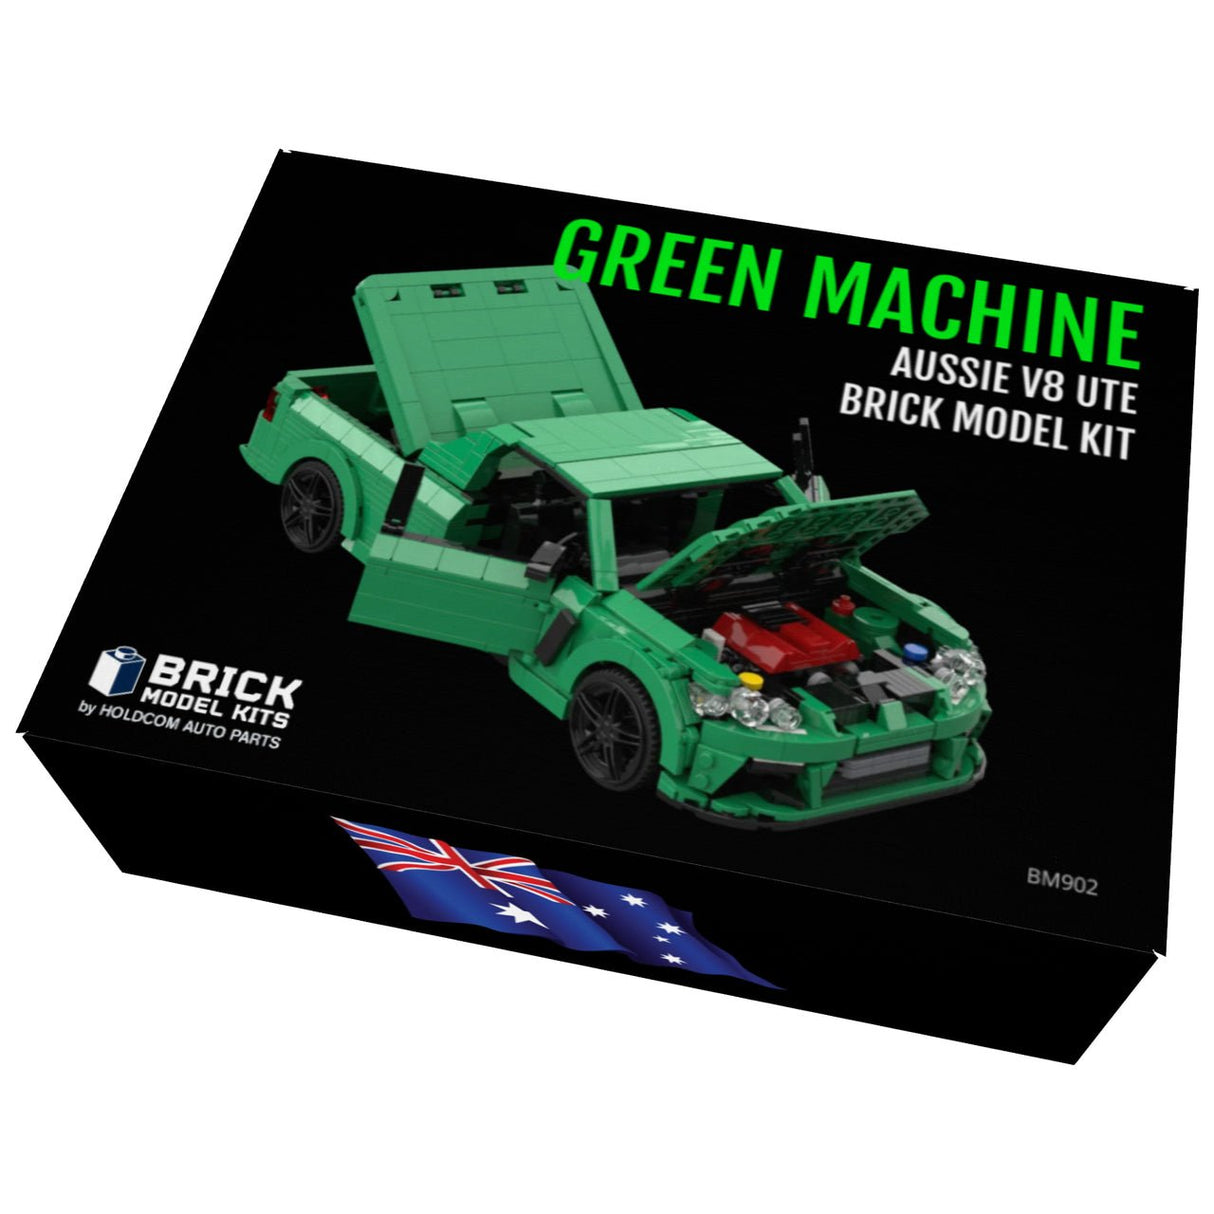 "Green Machine" Aussie V8 Ute Brick Model Kit - HOLDCOM AUTO PARTS